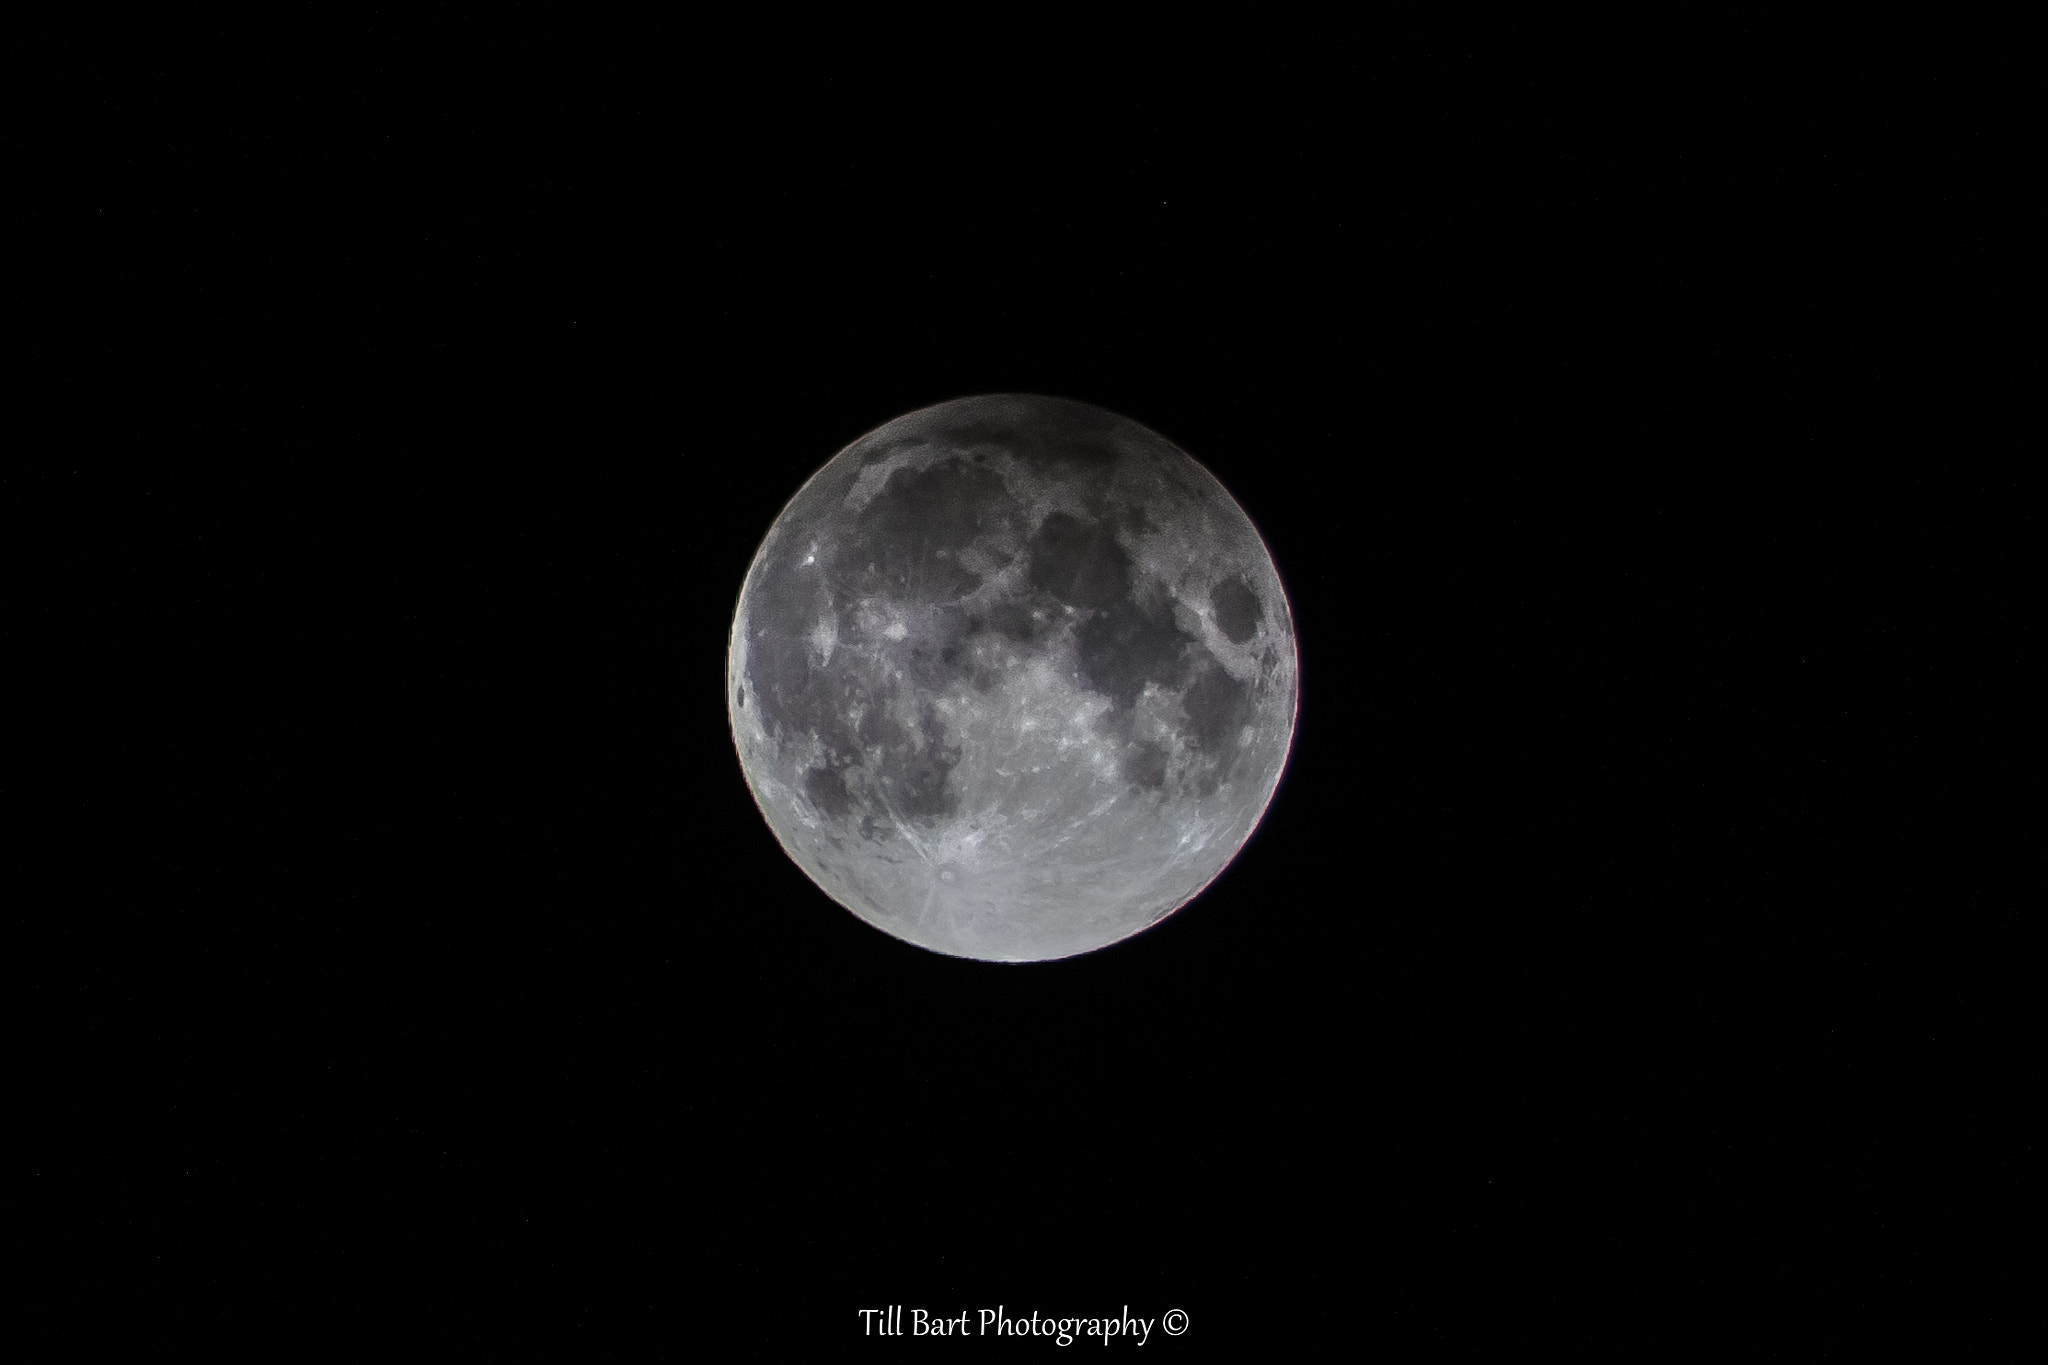 Nikon D500 + Sigma 70-300mm F4-5.6 APO DG Macro sample photo. Eclipse de lune pénombrale. photography